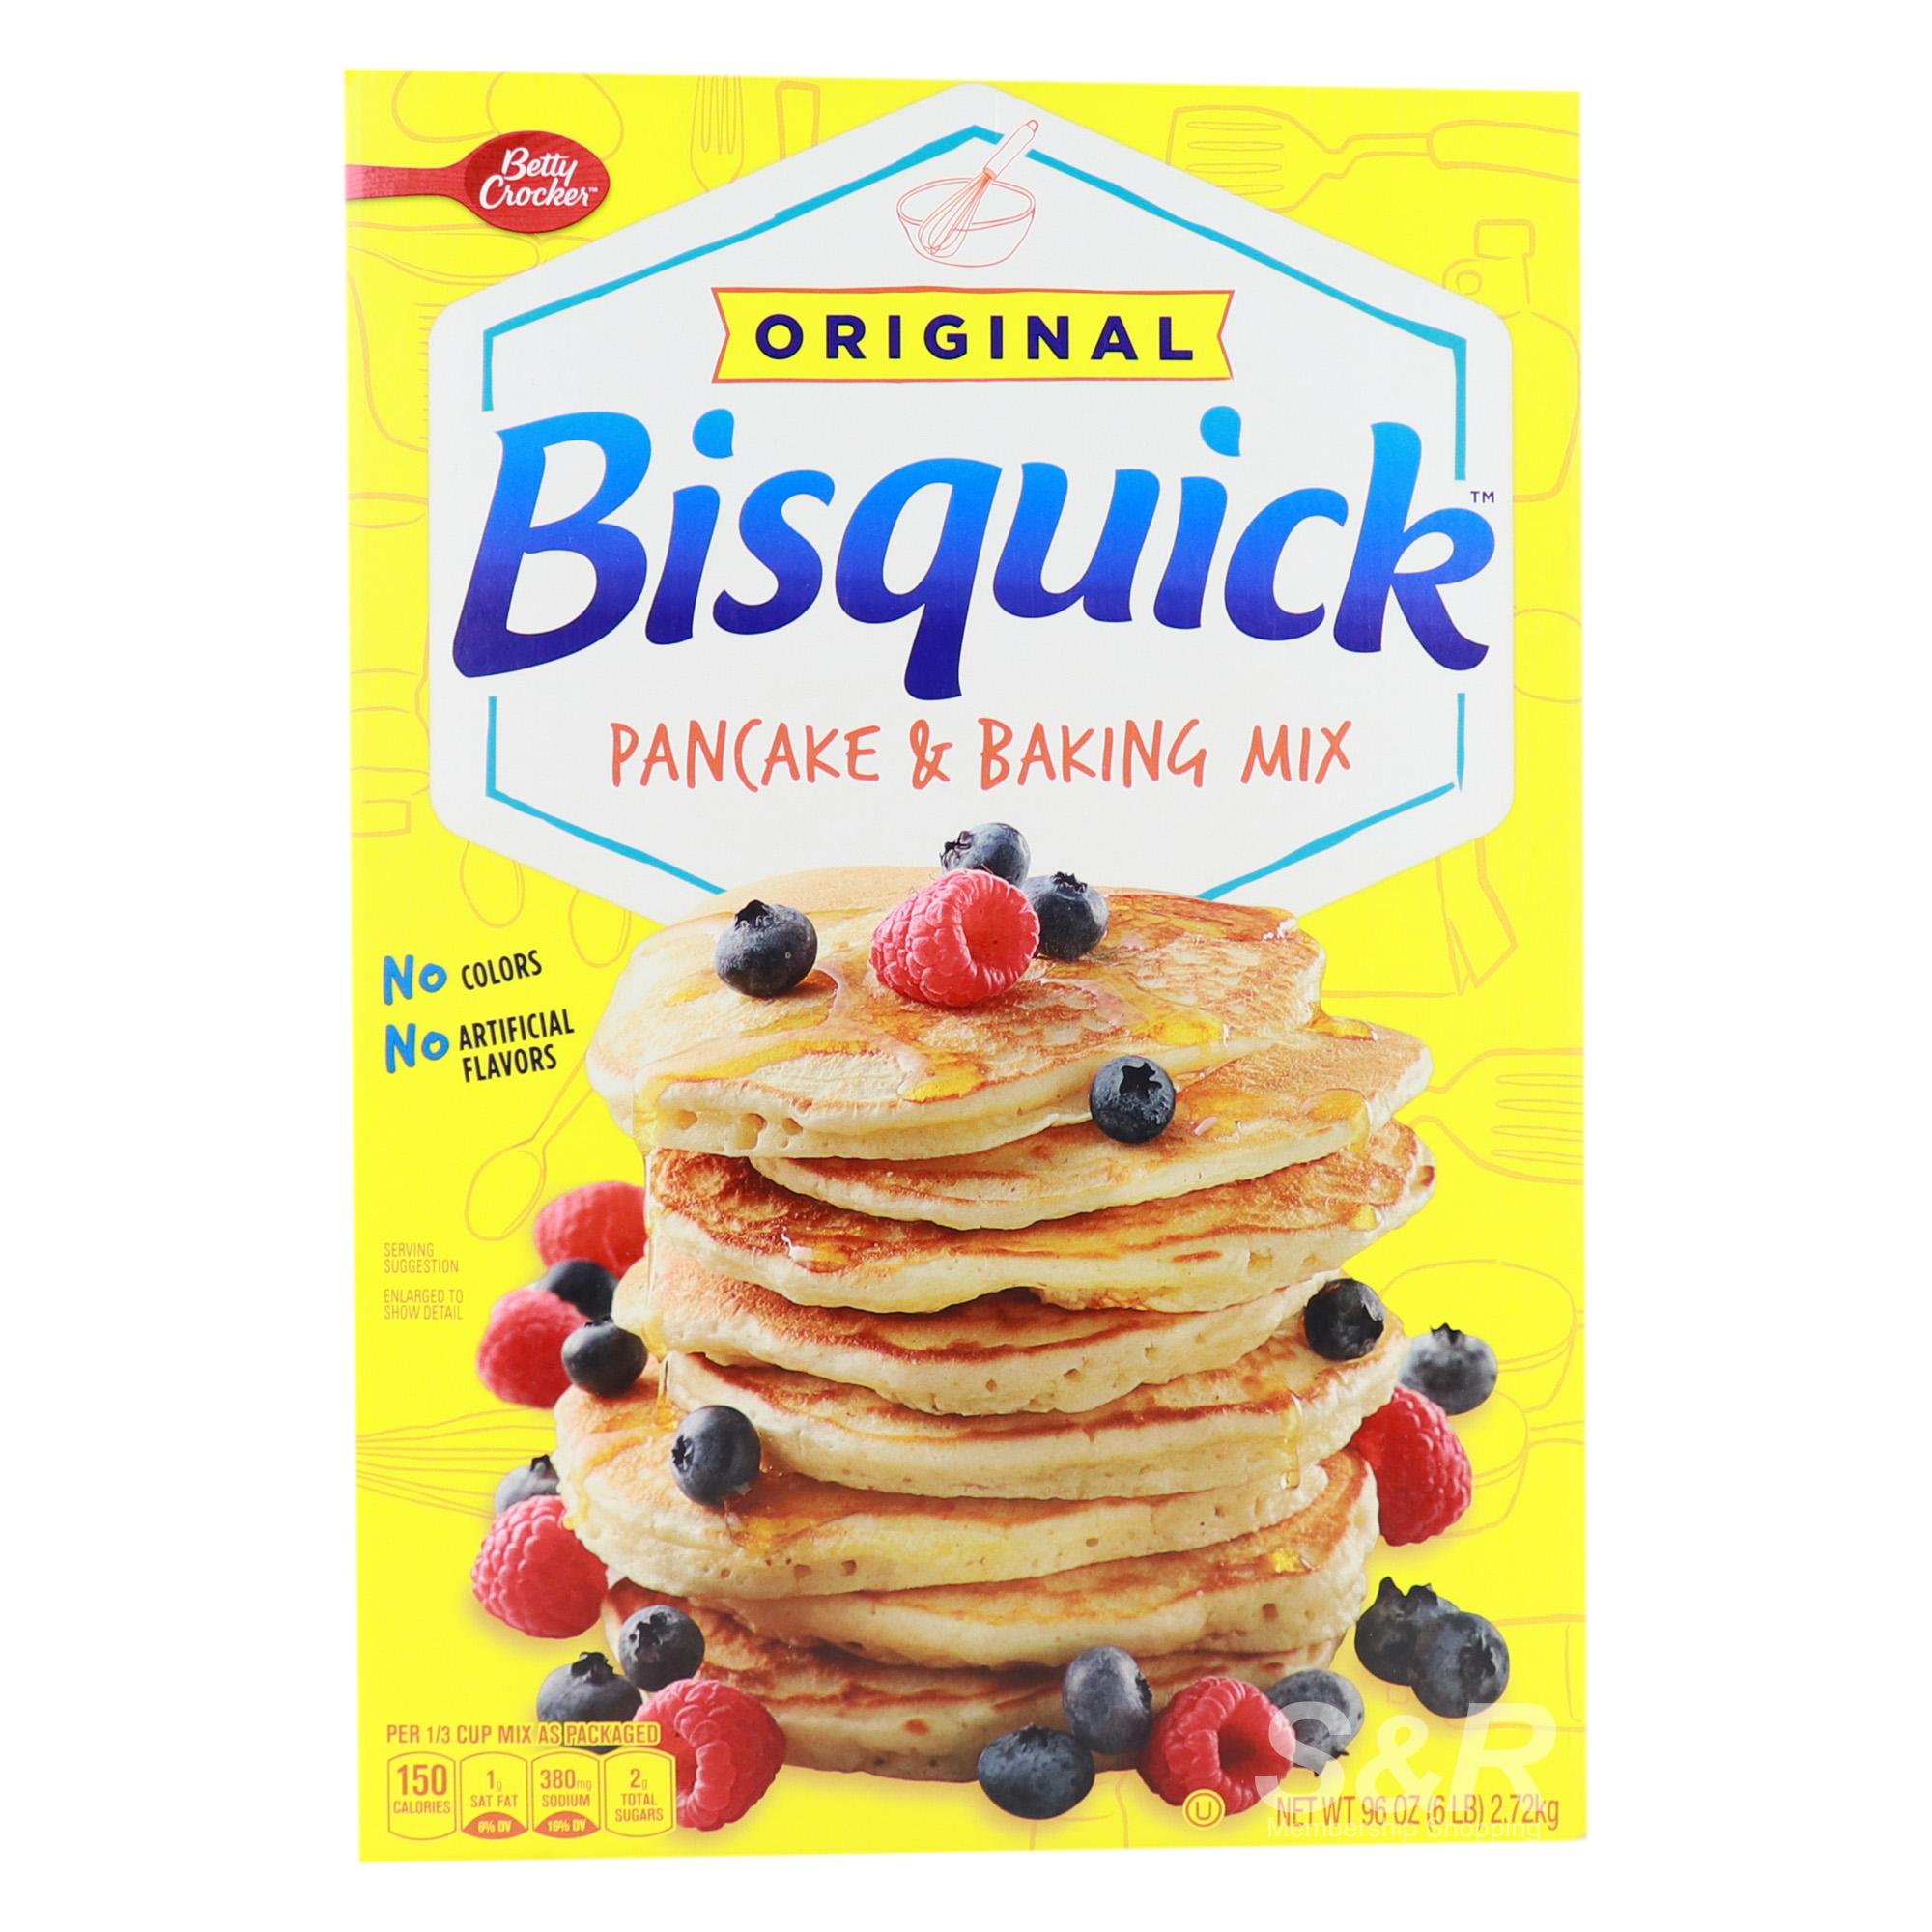 Original Bisquick Pancake & Baking Mix 2.72kg